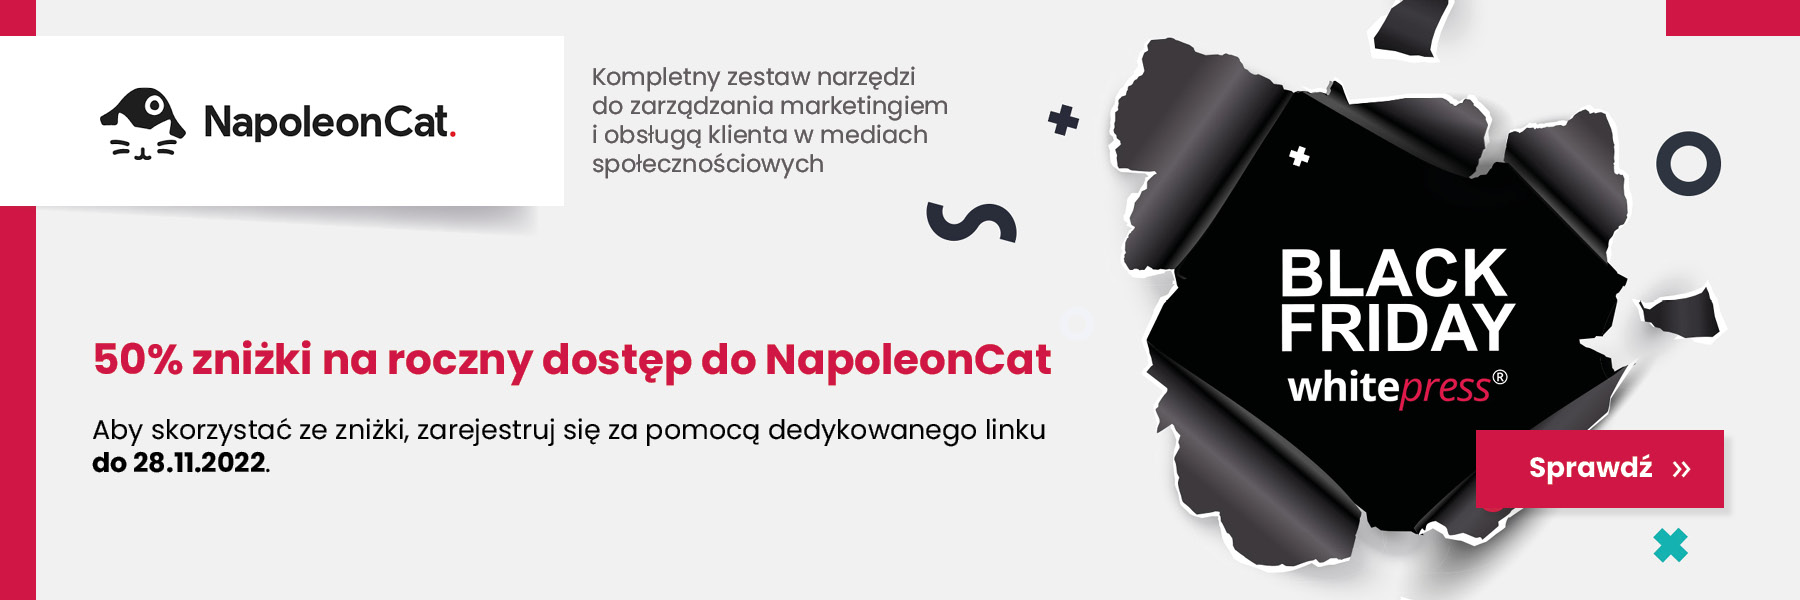 NapoleonCat promocja Black Friday 2022